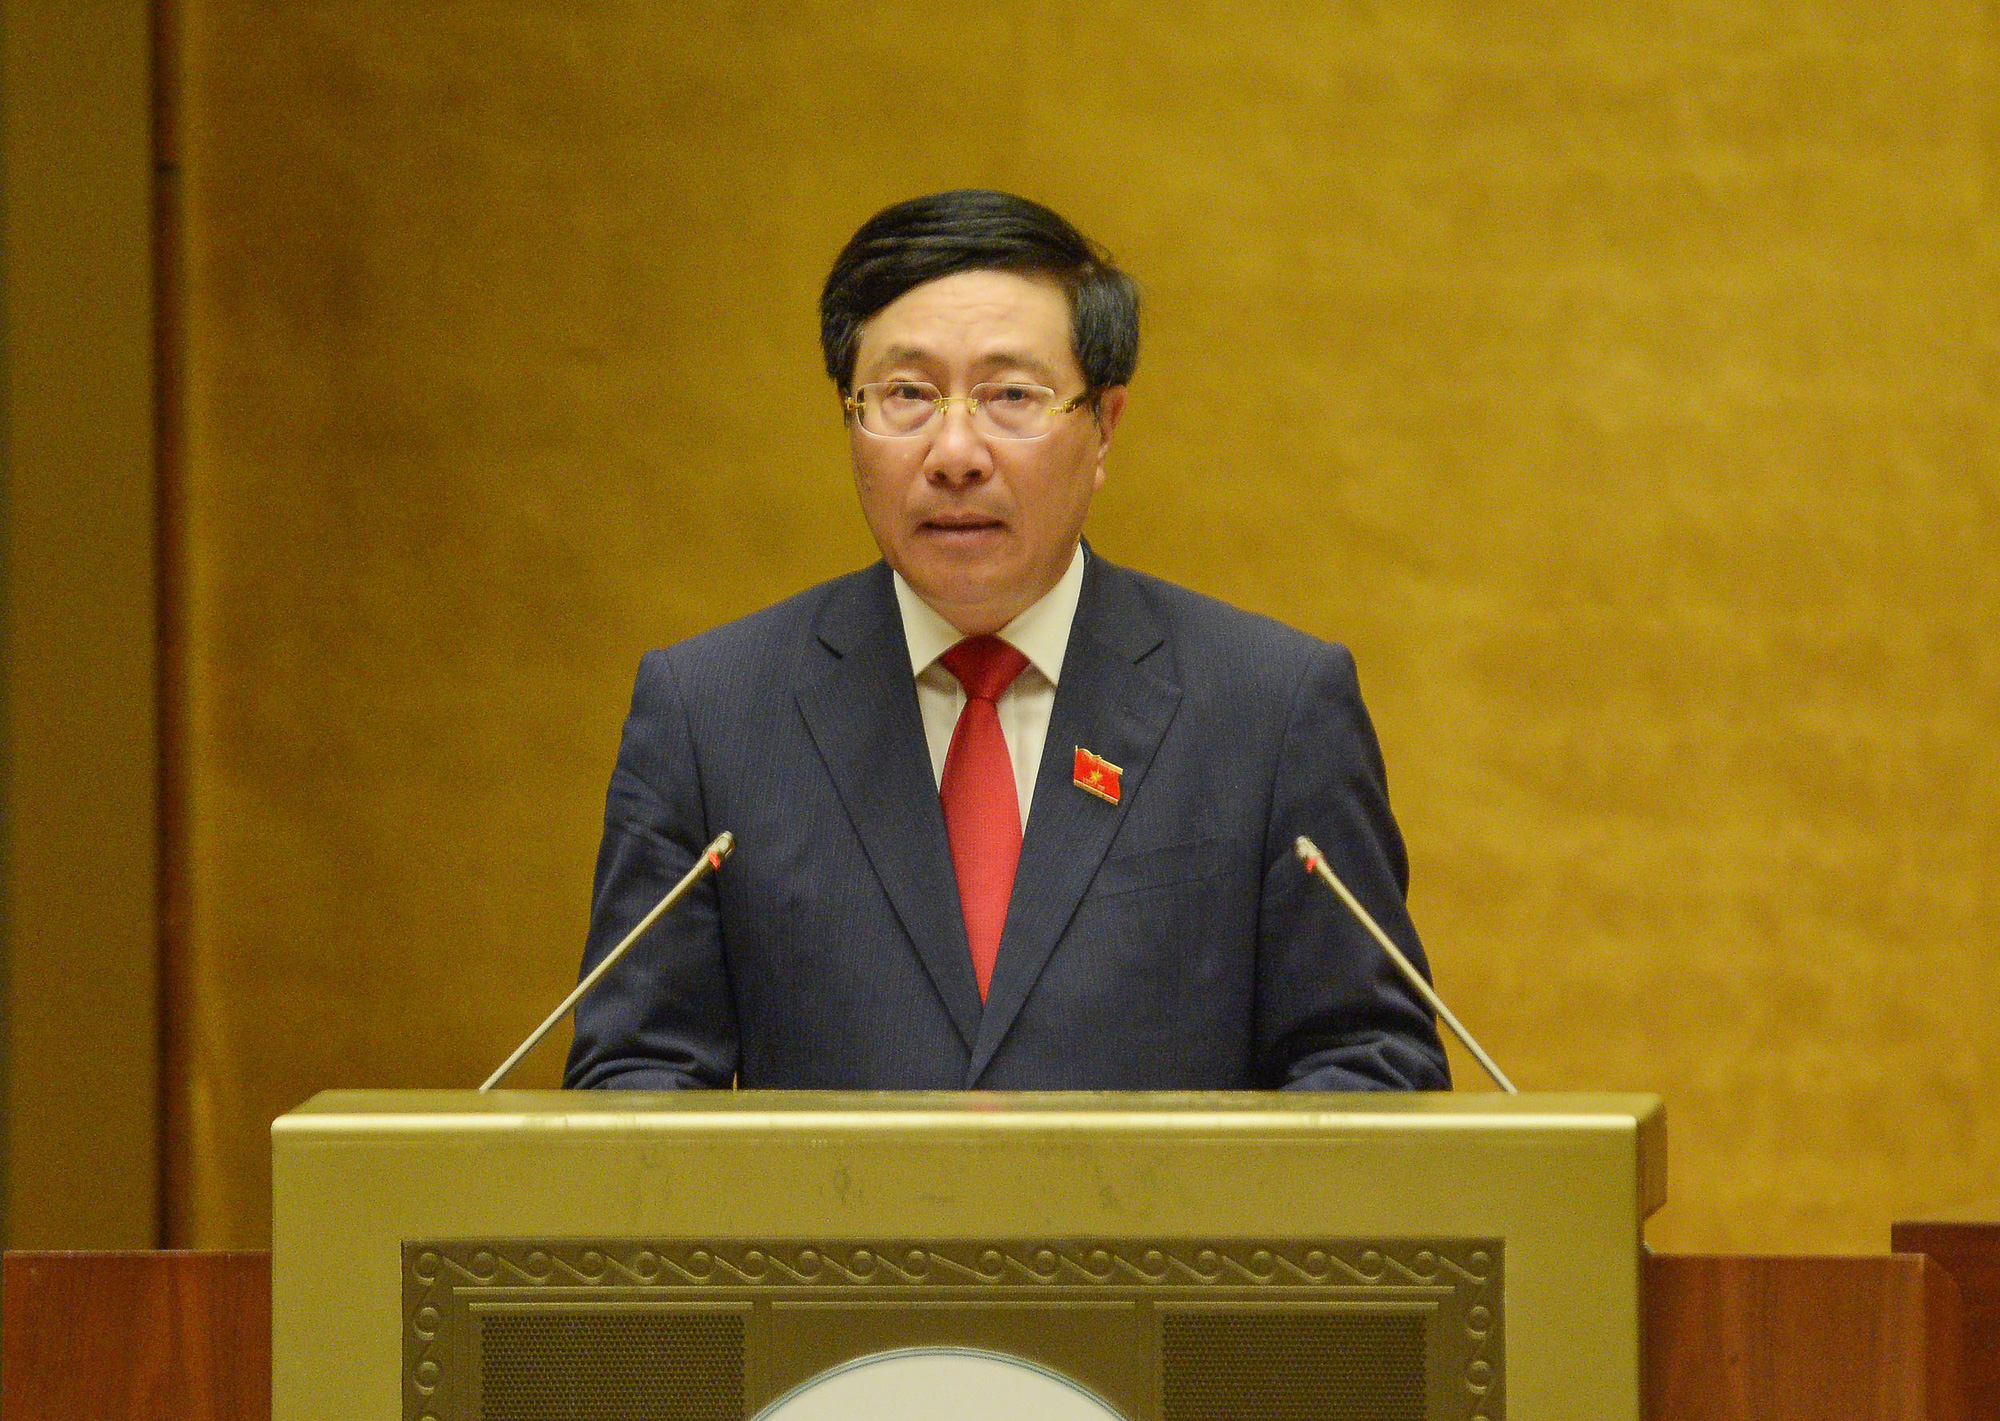 Phó Thủ tướng Phạm Bình Minh: Thương mại điện tử trở thành kênh phân phối quan trọng trong dịch Covid-19 - Ảnh 1.